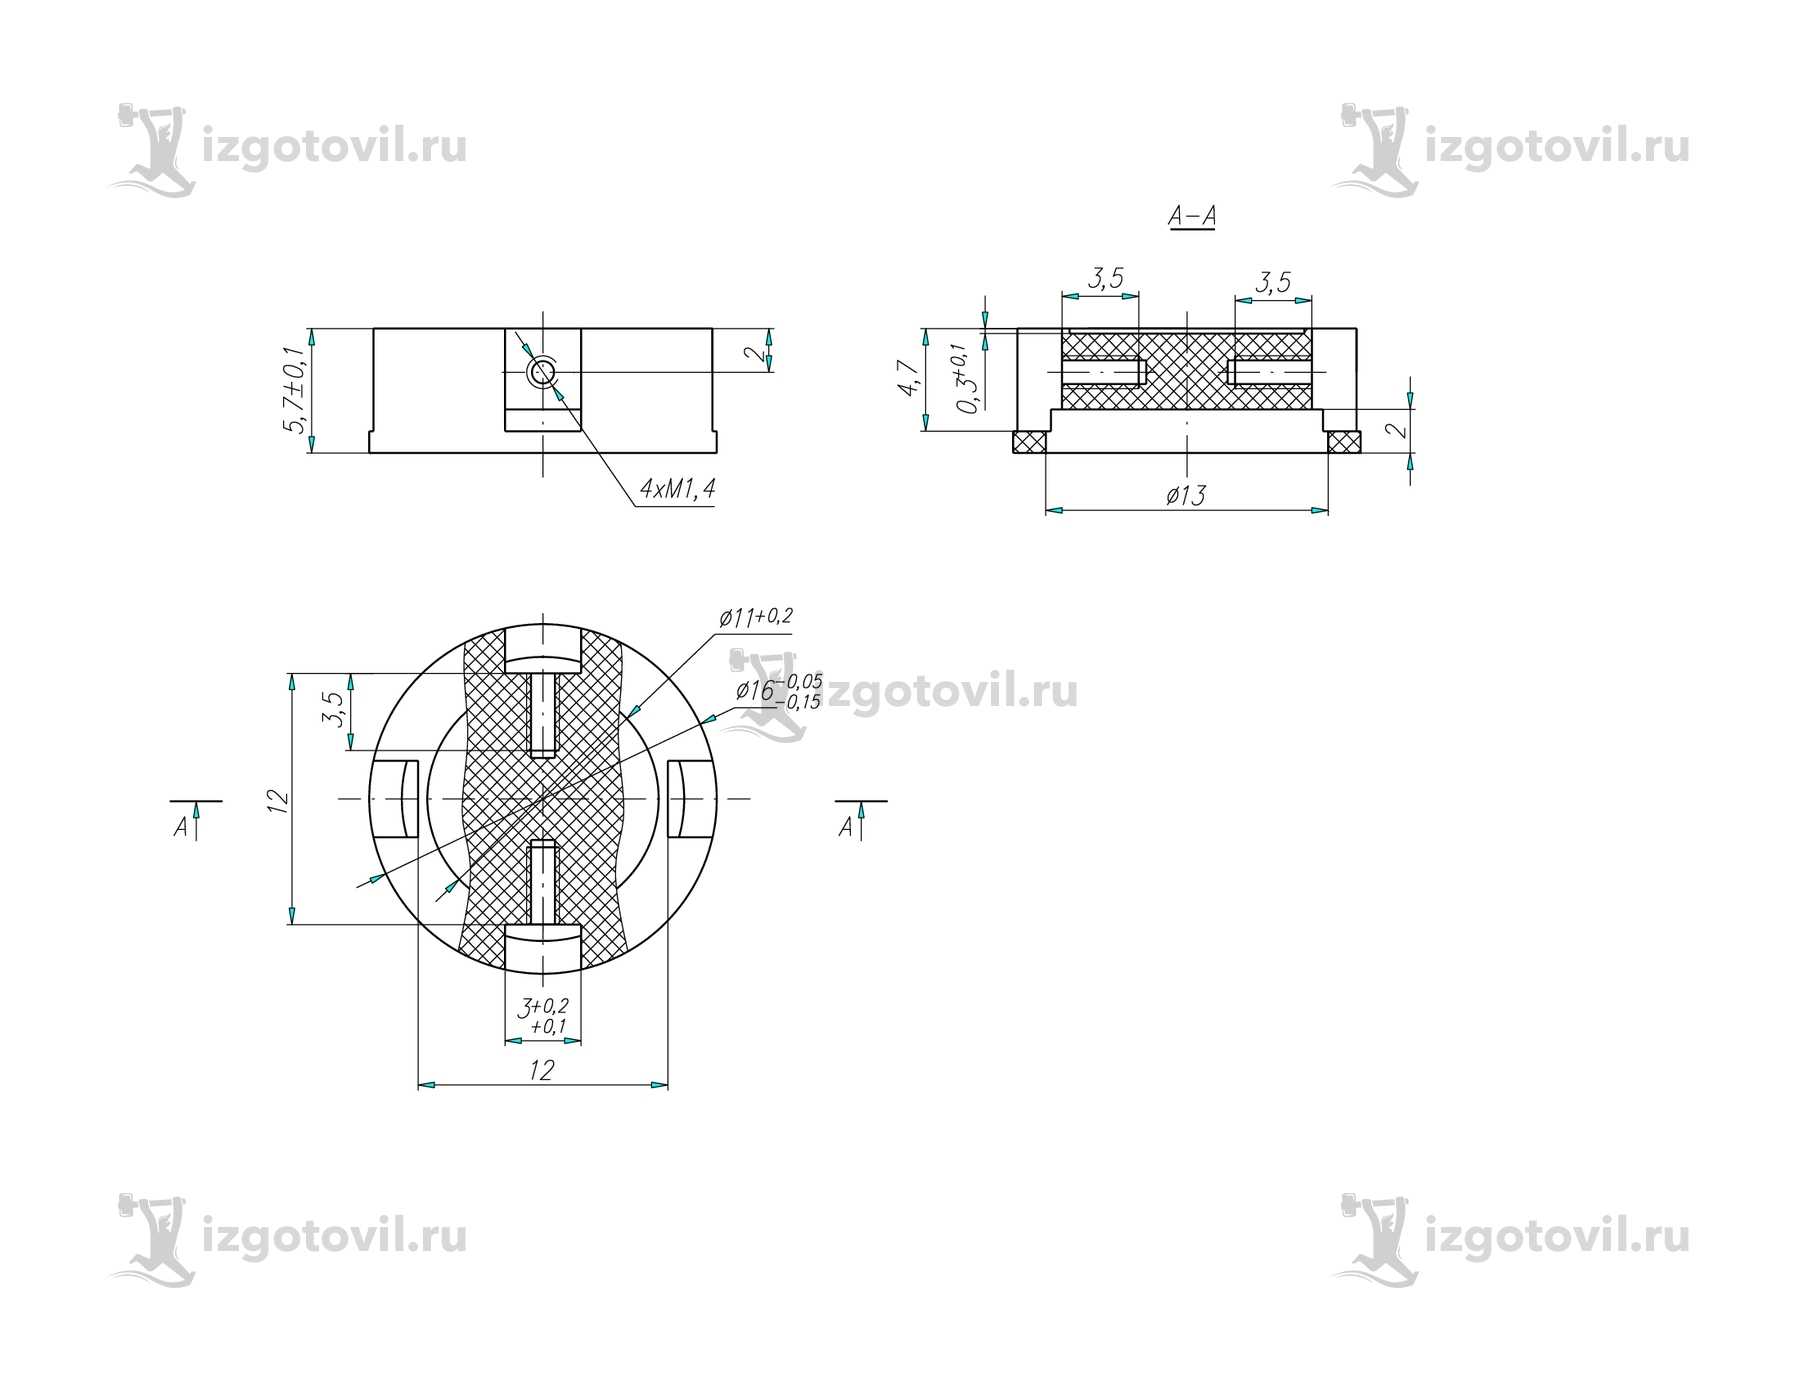 Токарная обработка ЧПУ изделий по чертежам из прессматериала АГ 4В